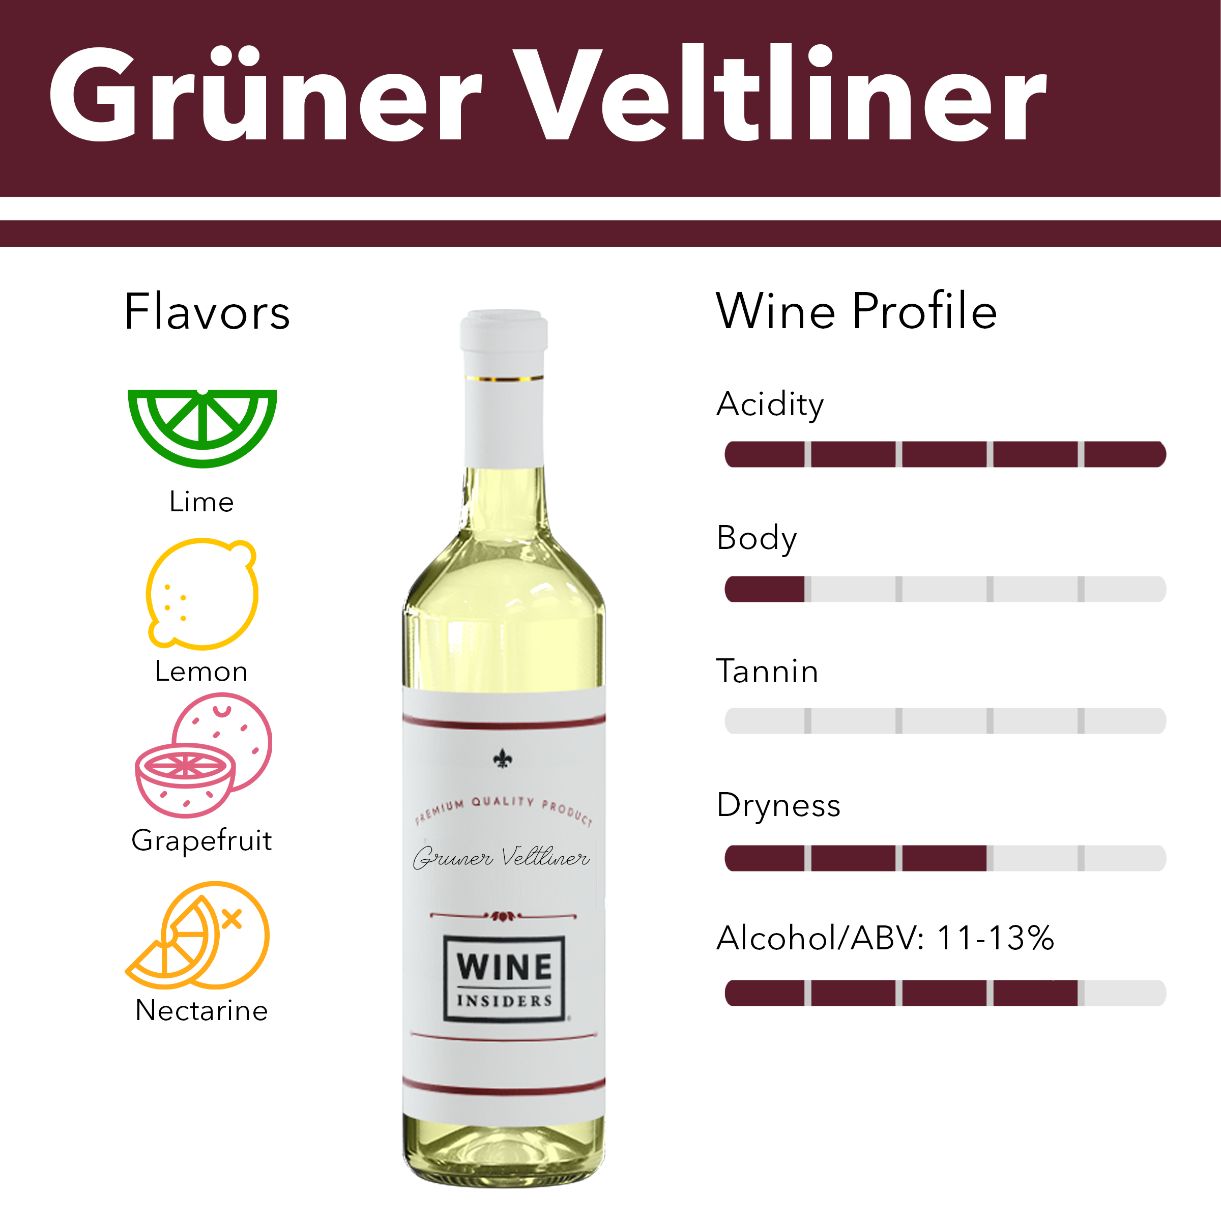 Gruner Veltliner wine flavor profile.